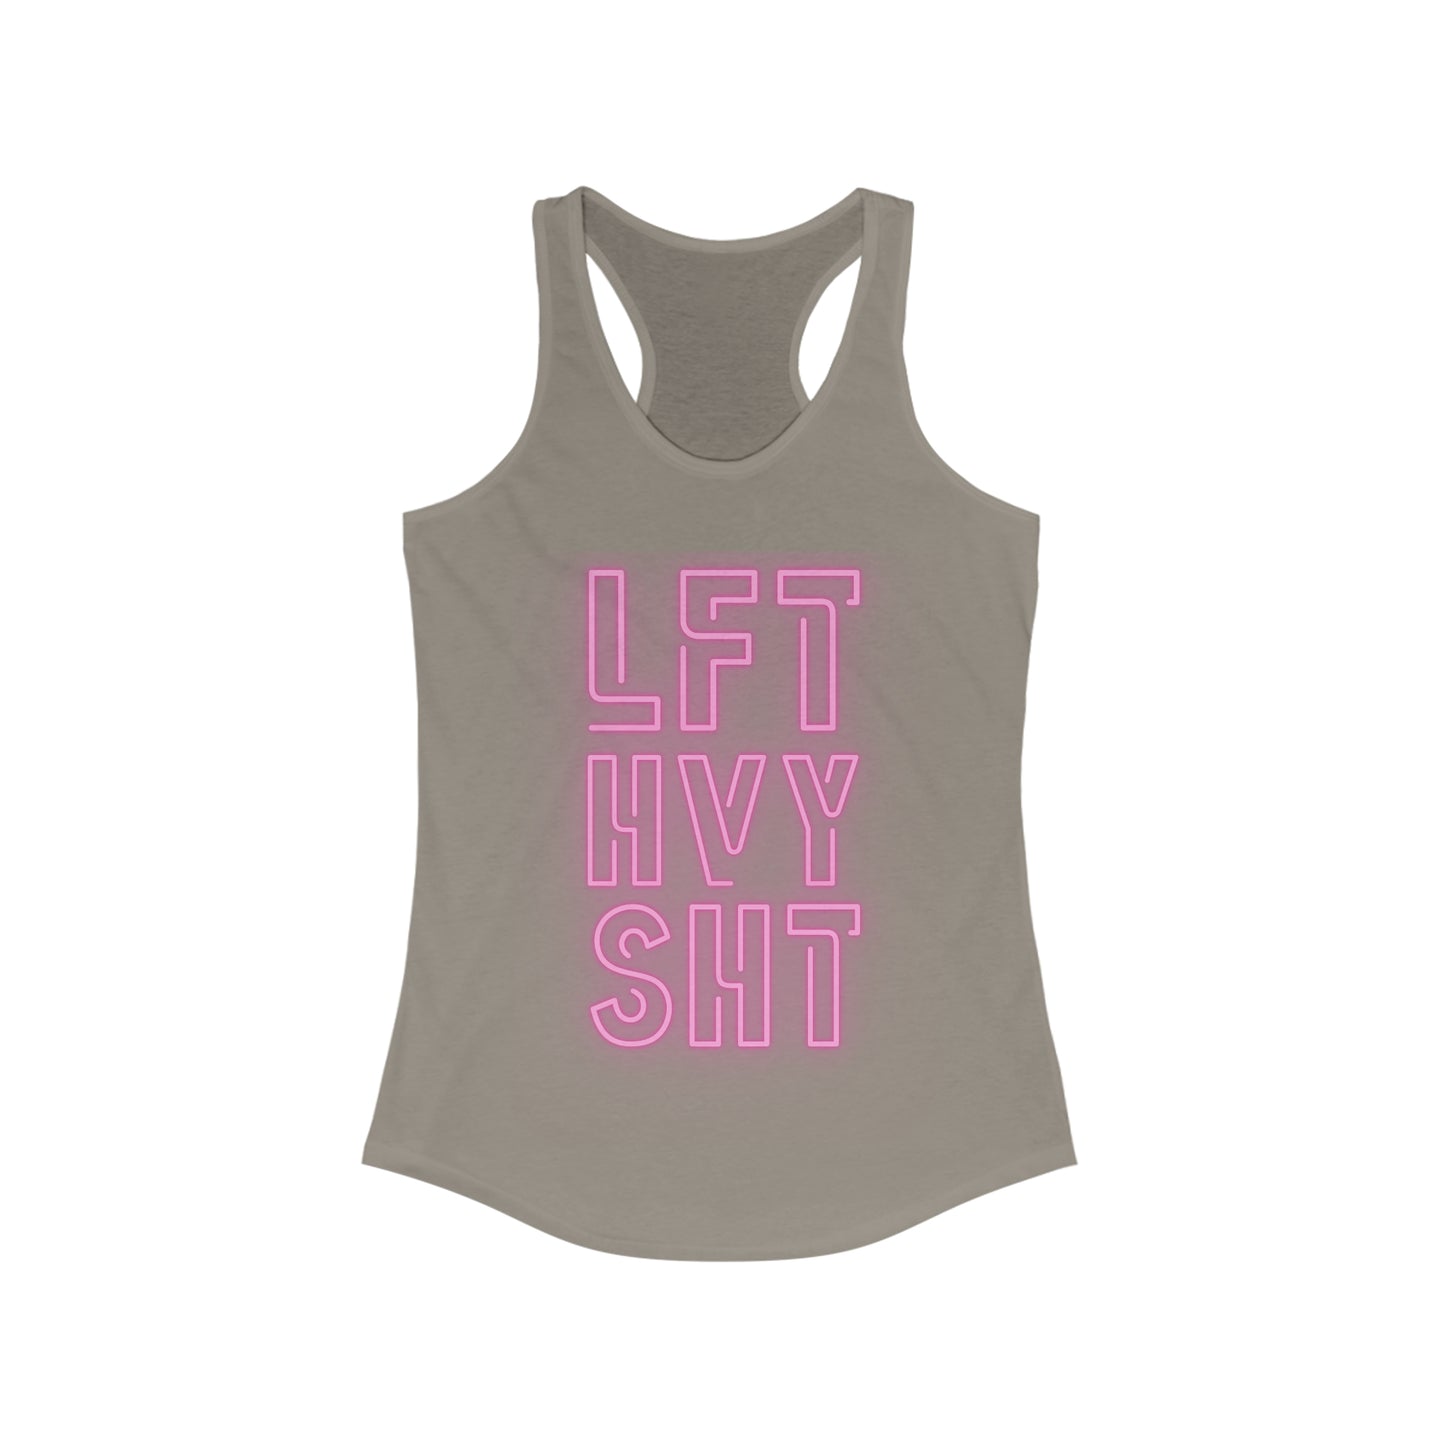 LFT HVY SHT Women's workout Tank Top